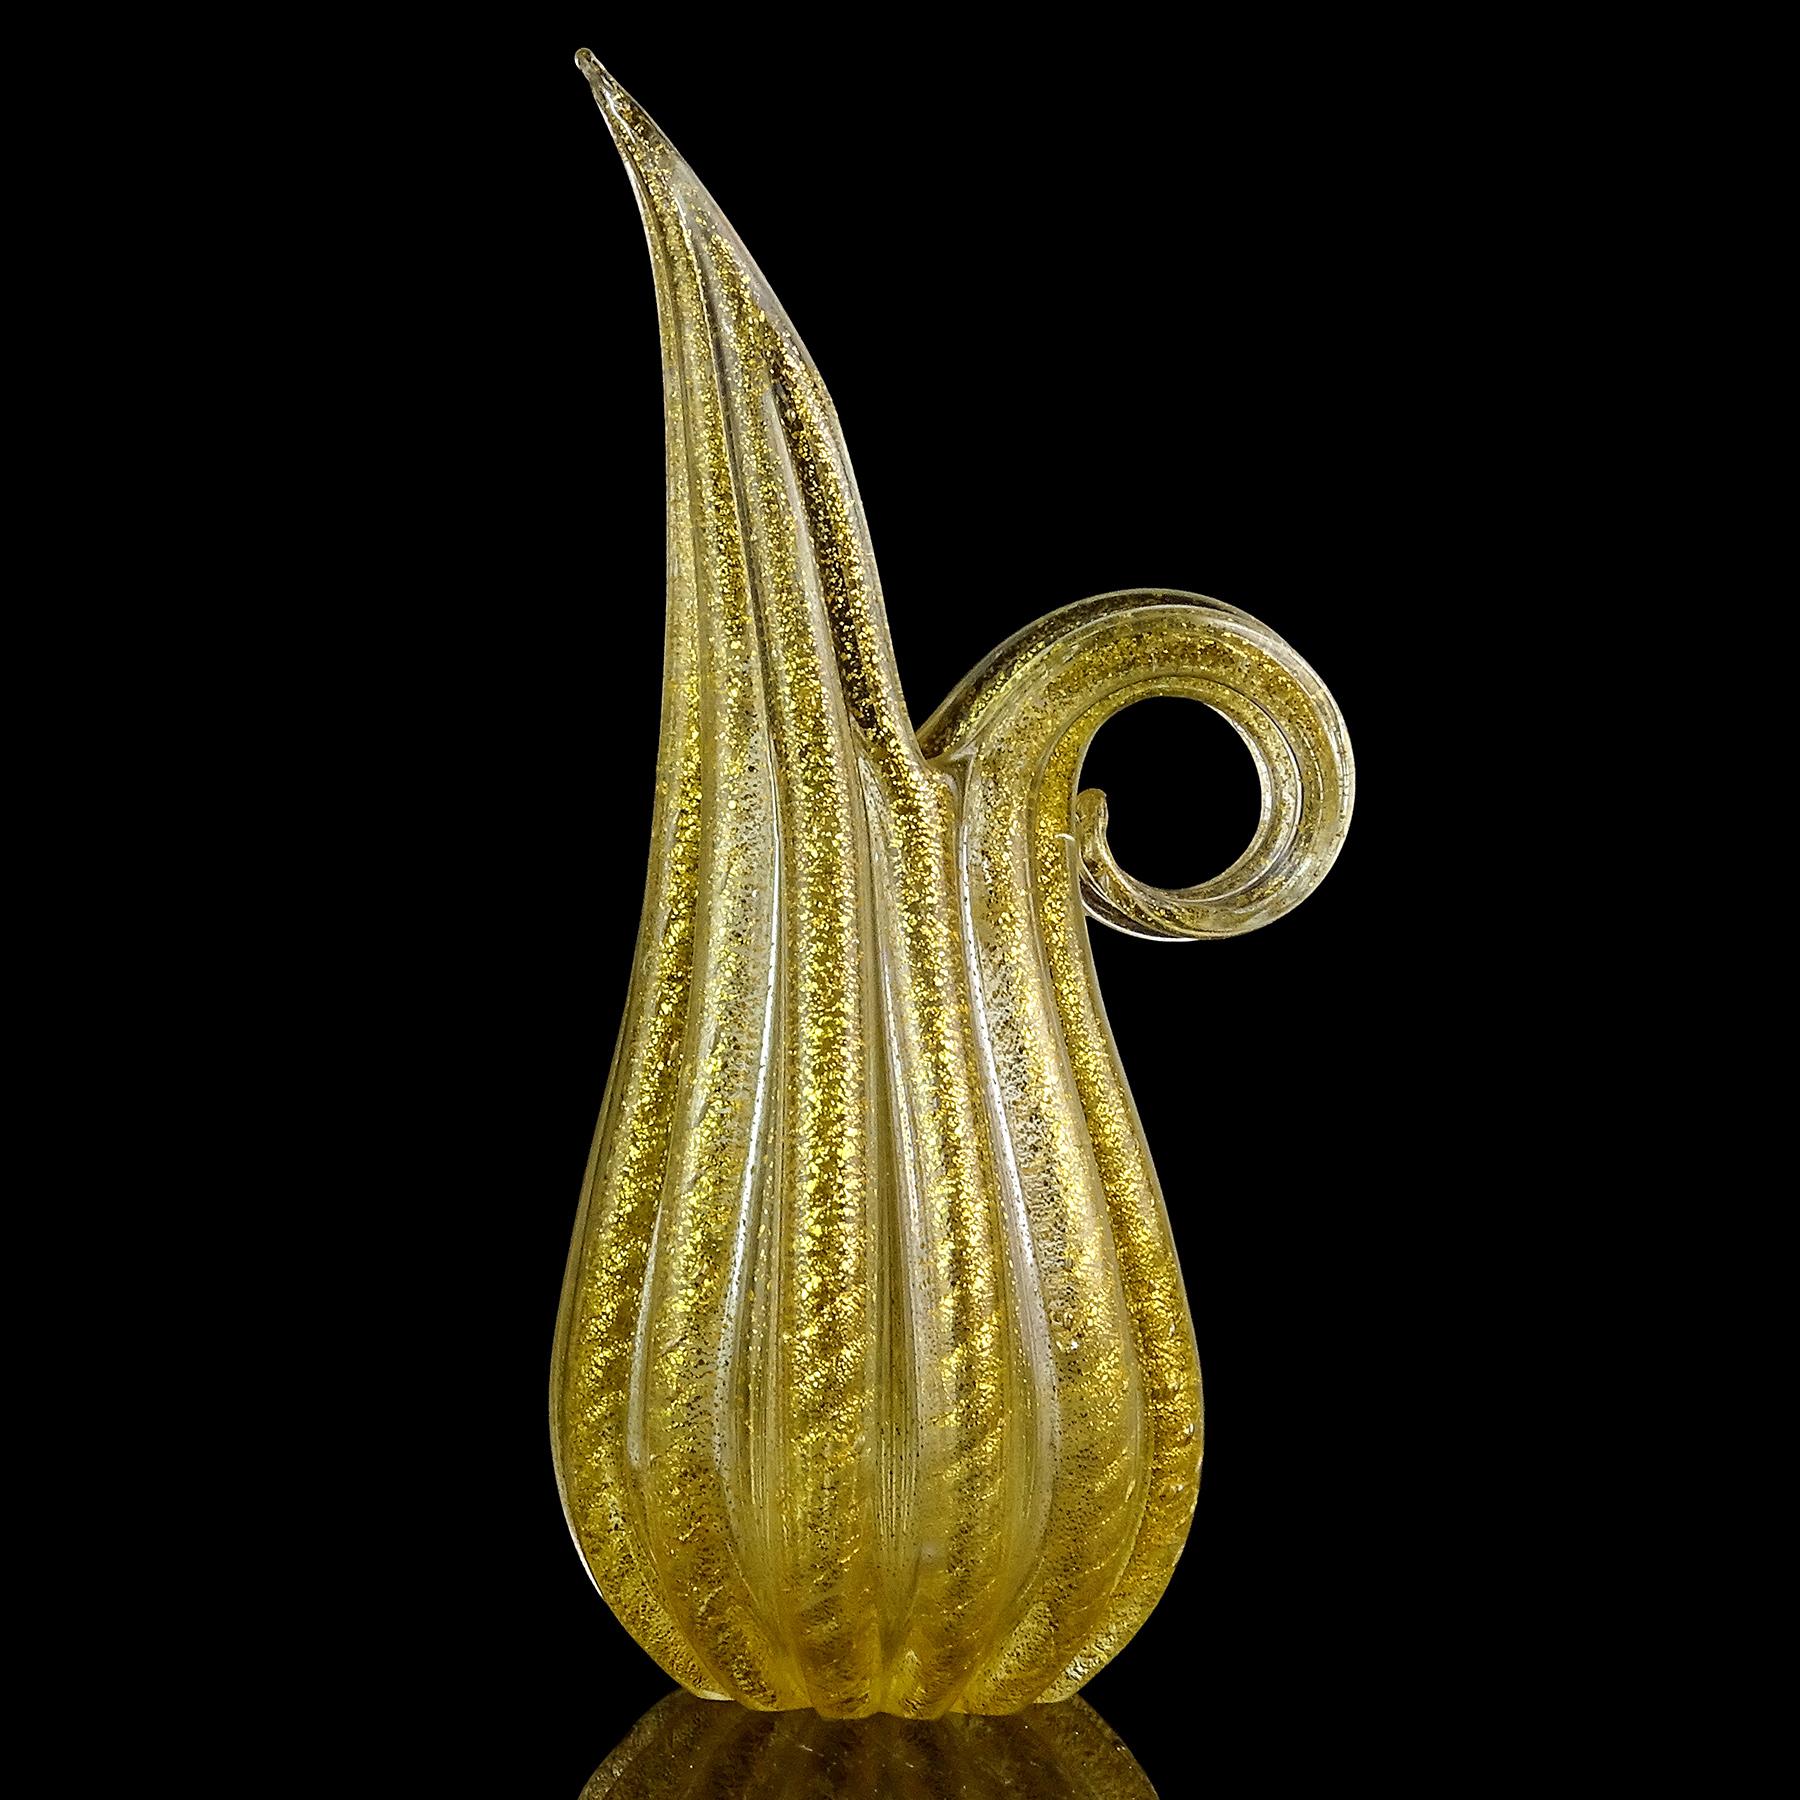 Schöne Vintage Murano mundgeblasenen Goldflecken italienischen Kunstglas gerippte Oberfläche Krug / Vase. Dokumentiert für den Designer Ercole Barovier, für die Firma Barovier e Toso. Das Stück hat ein geripptes Muster mit umherwirbelnden